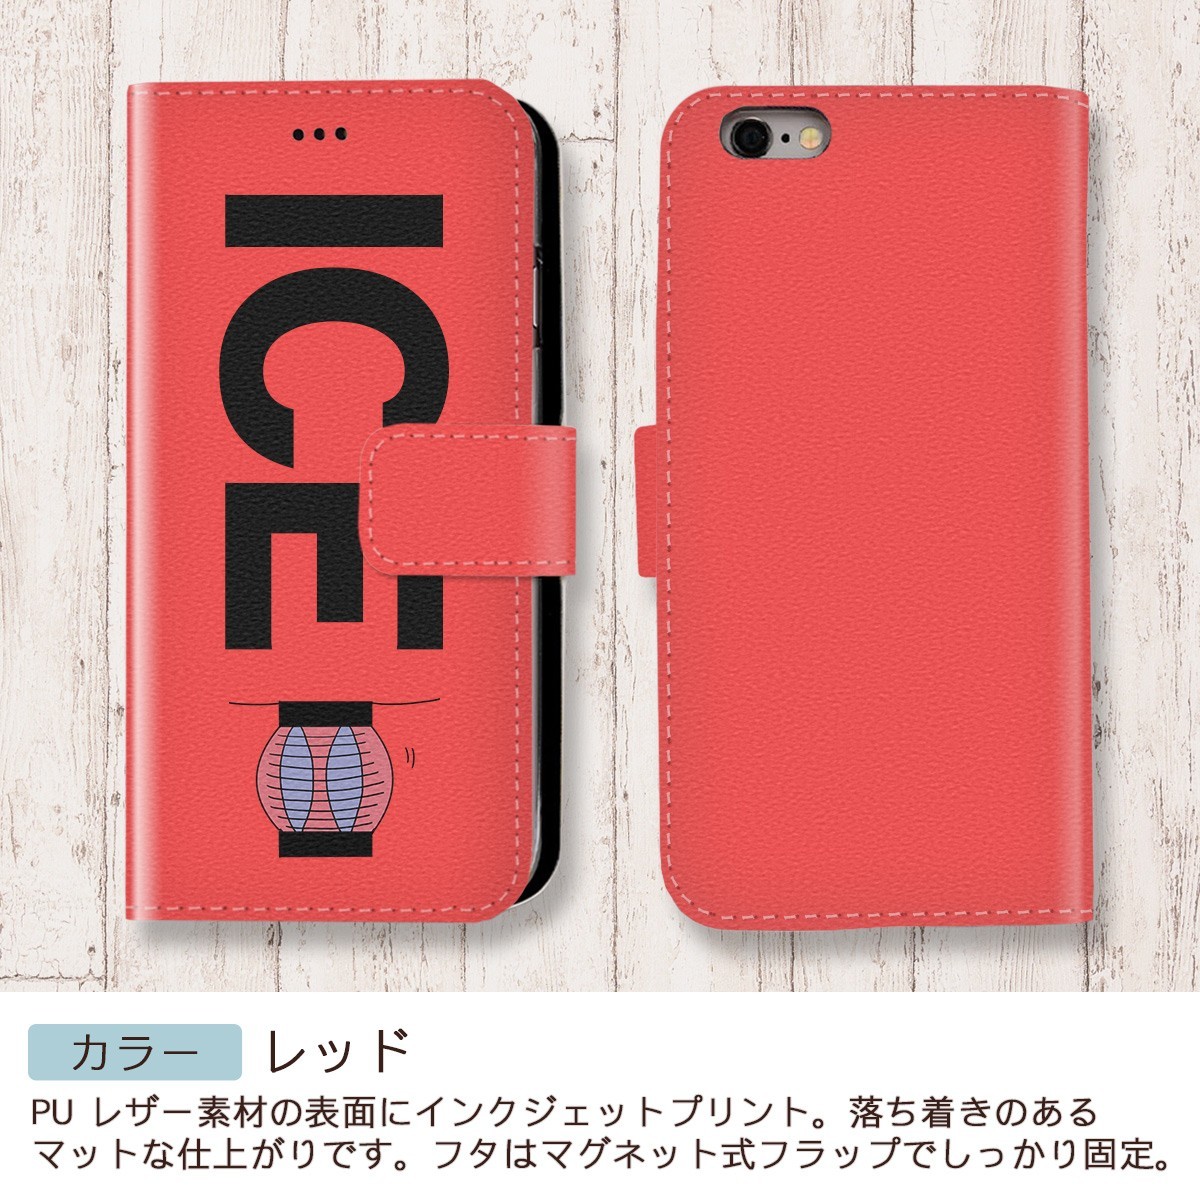 赤と青 ちょうちん おもしろ X XSケース ケース iPhone X iPhone XS ケース 手帳型 アイフォン かわいい カッコイイ メンズ レ_画像6